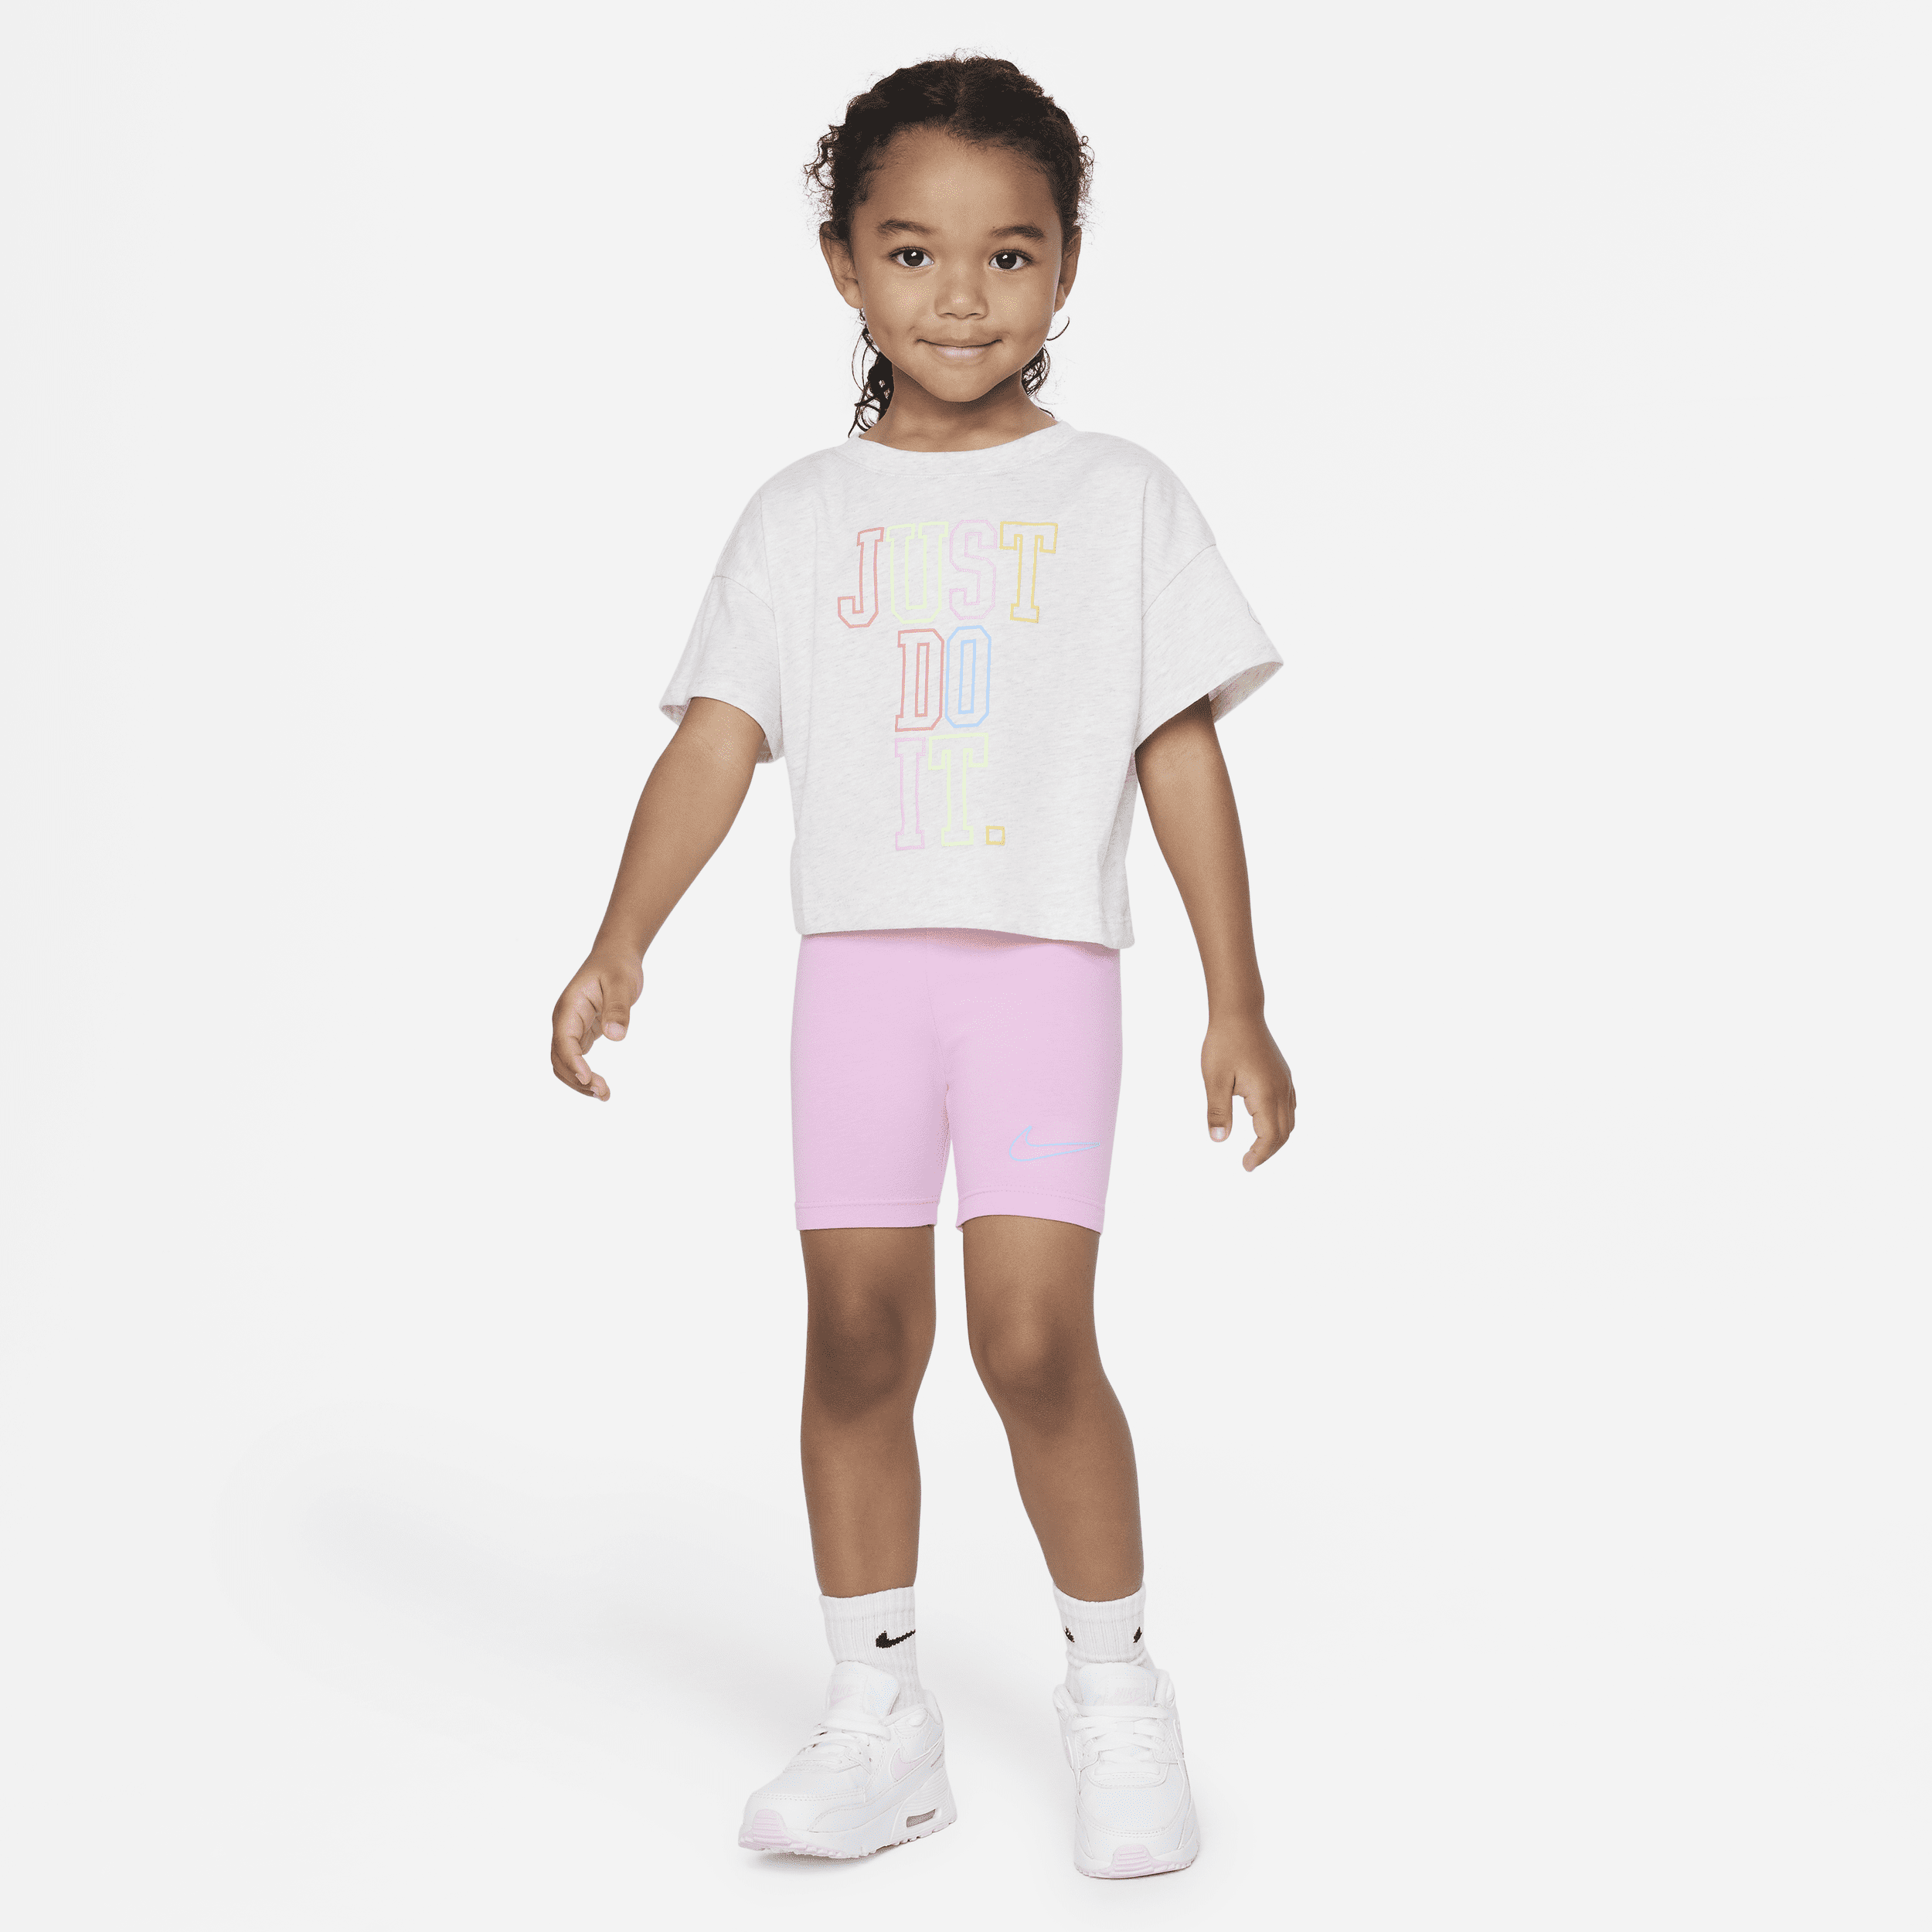 Zestaw T-shirt i spodenki dla małych dzieci Nike - Różowy